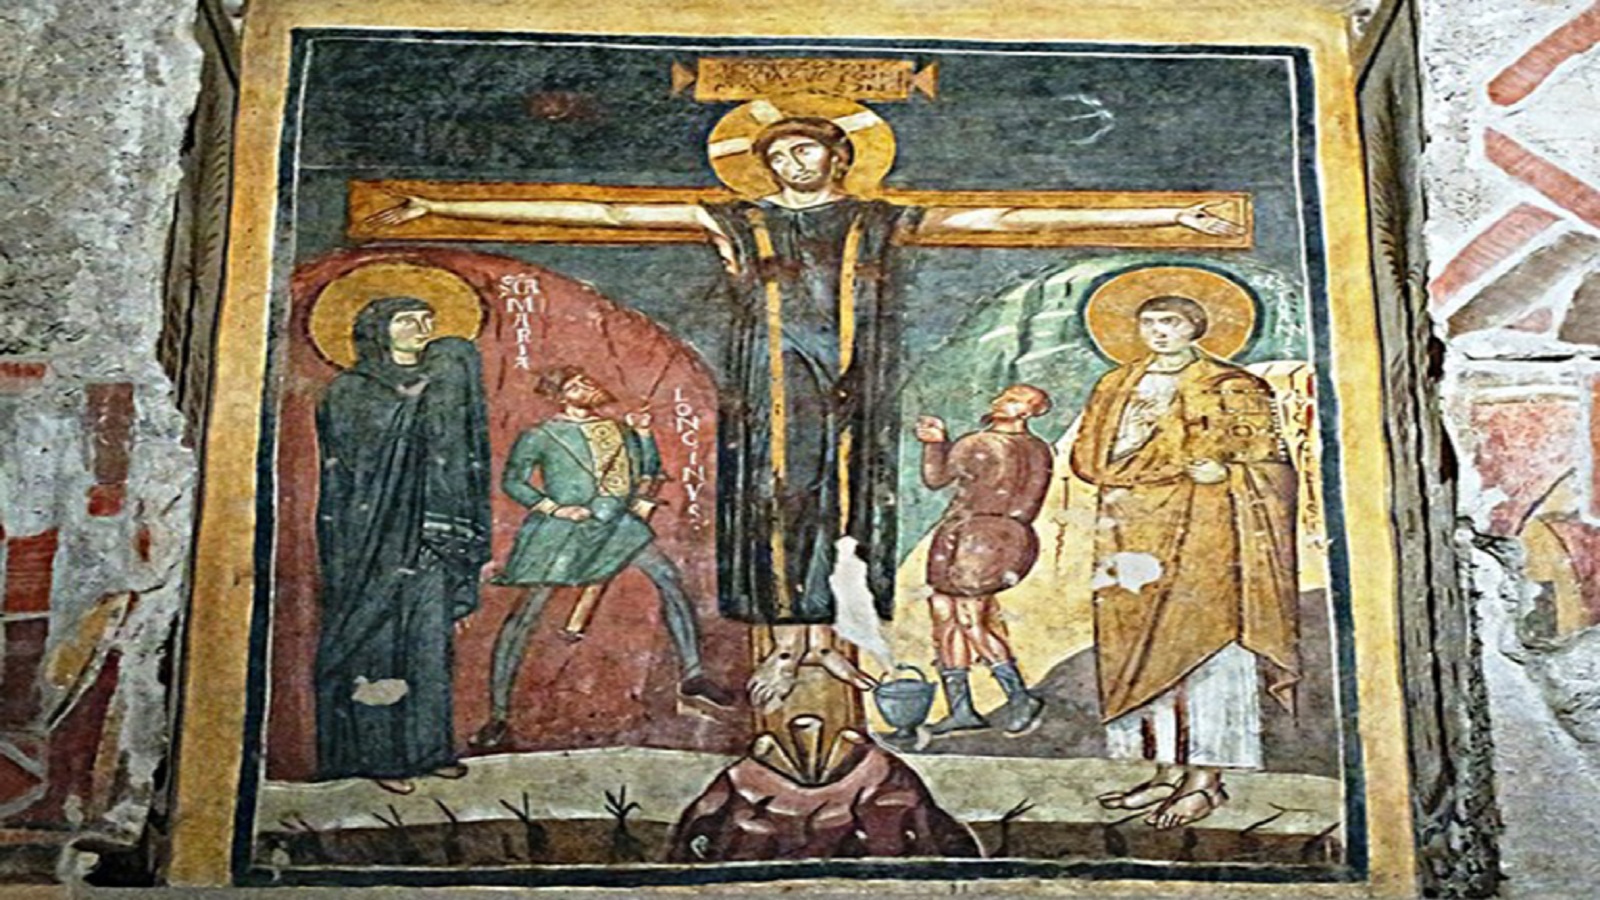  جدارية من "كنيسة القديسة مريم الأثرية" في روما، القرن الثامن.